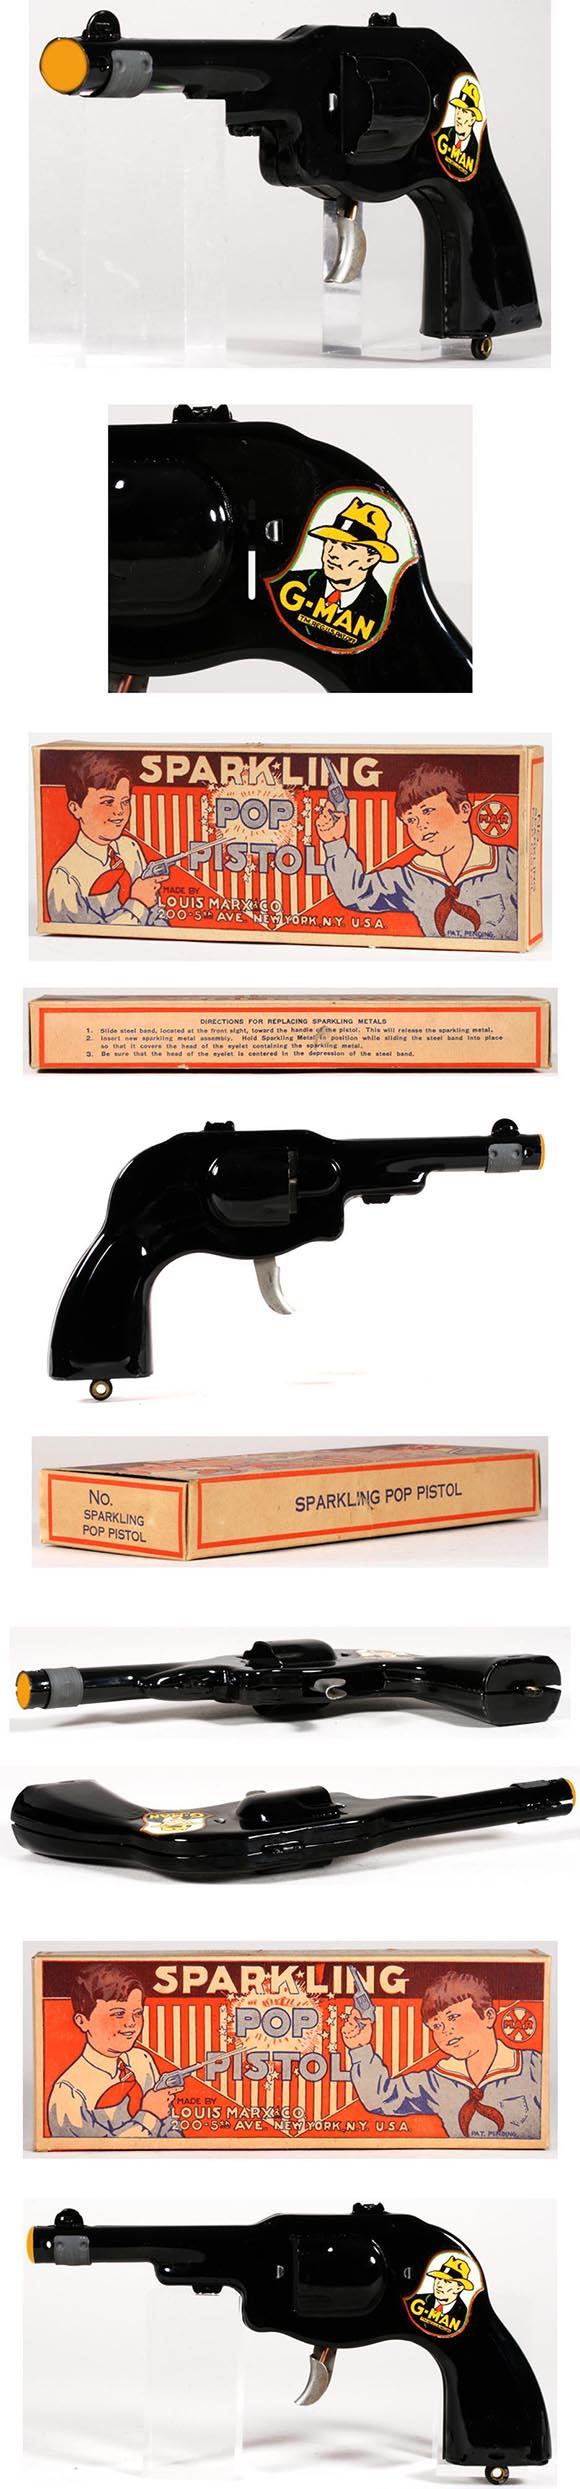 1935 Marx, G-Man Sparkling Pop Pistol in Original Box (#3)